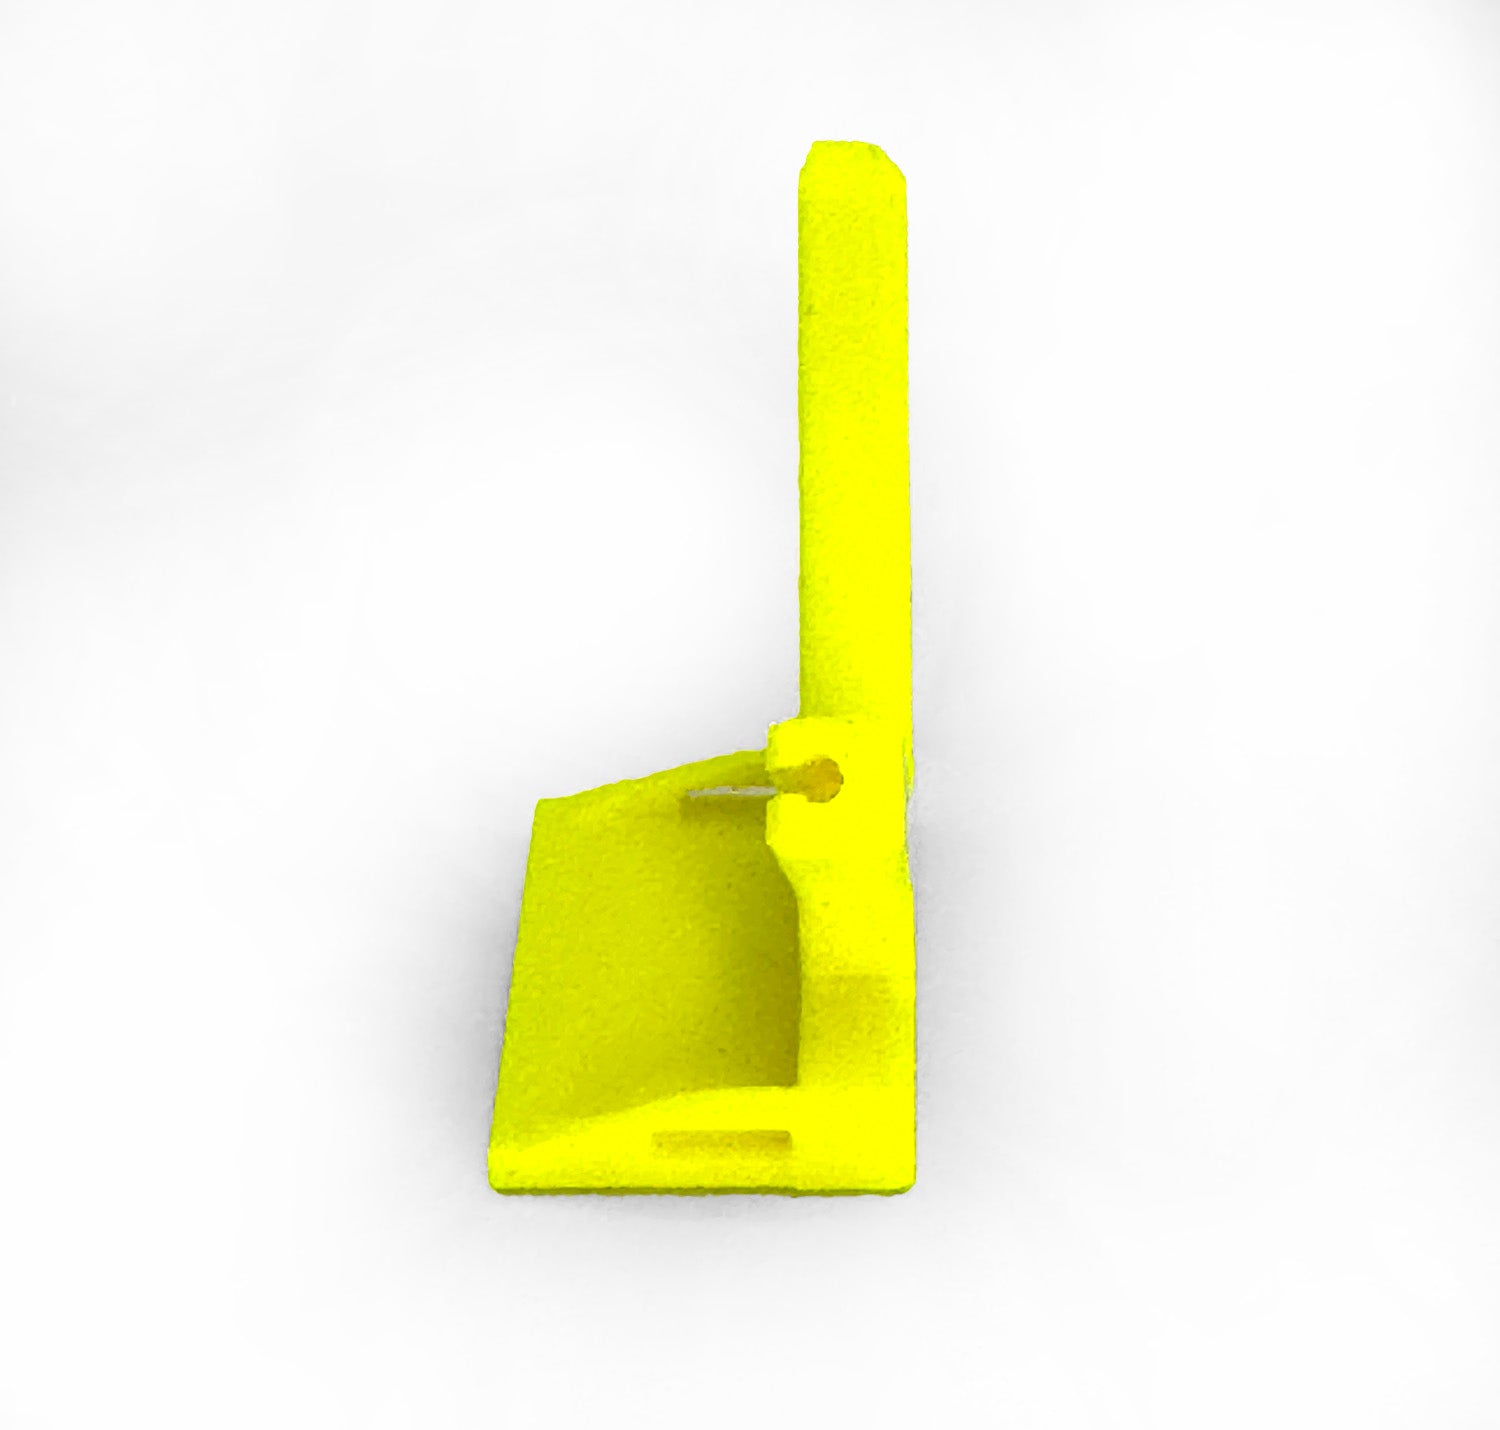 XGuard Universal Antenna Mount - Yellow